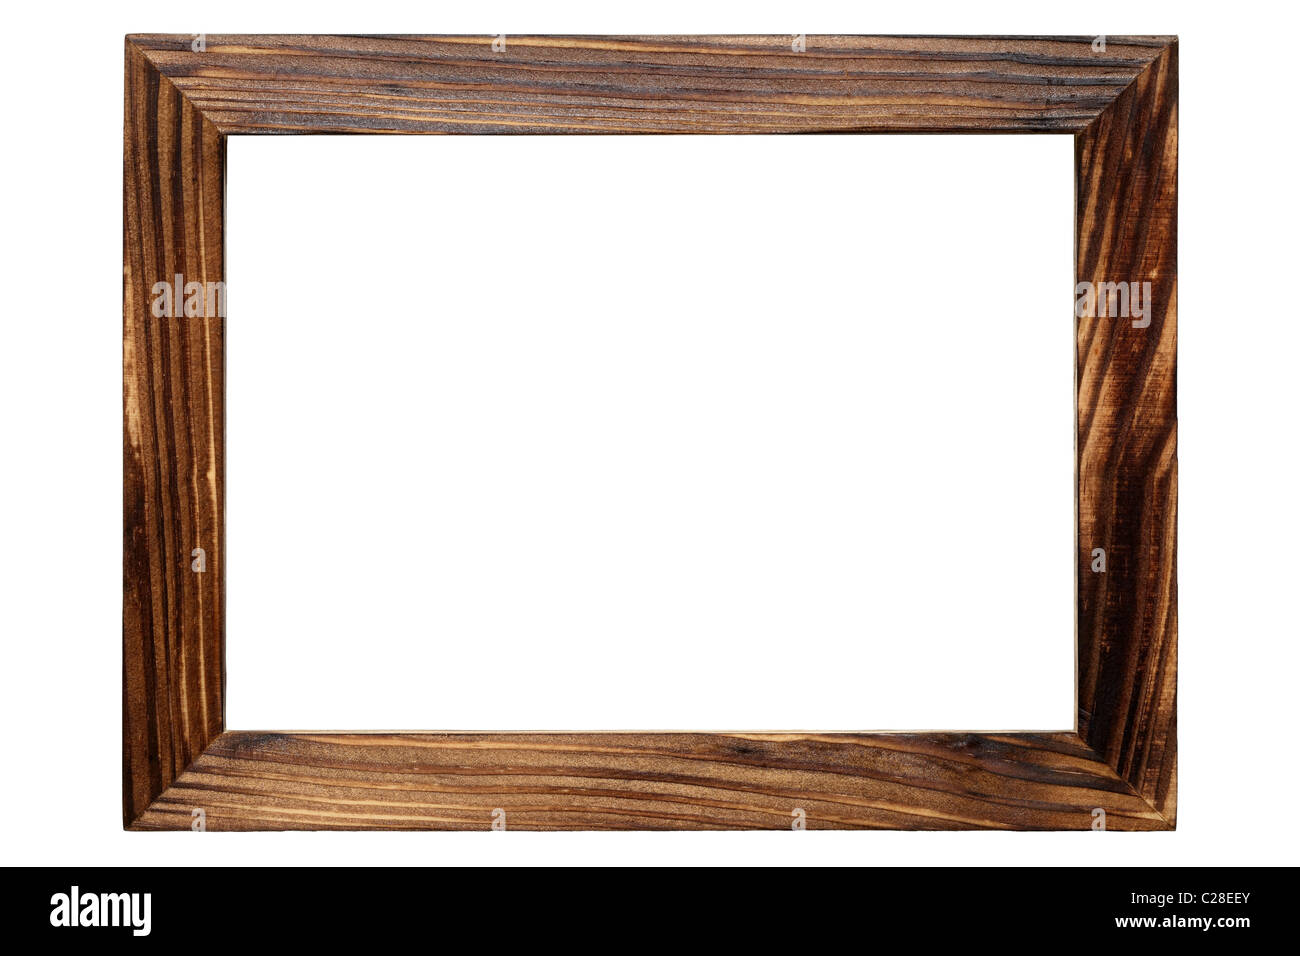 Wood frame isolated on white background Stock Photo